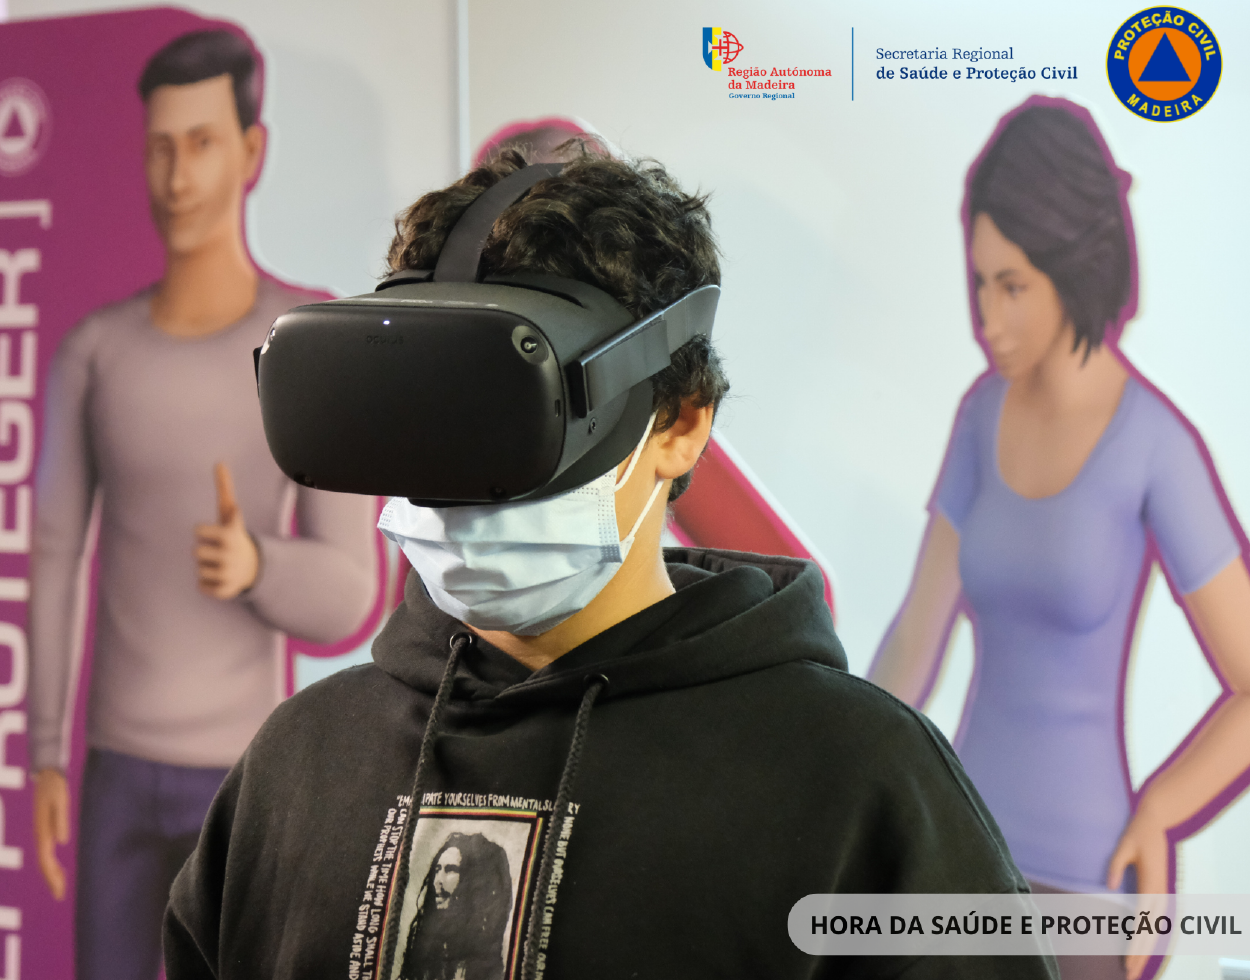 Proteção Civil promove cultura de segurança através de realidade virtual